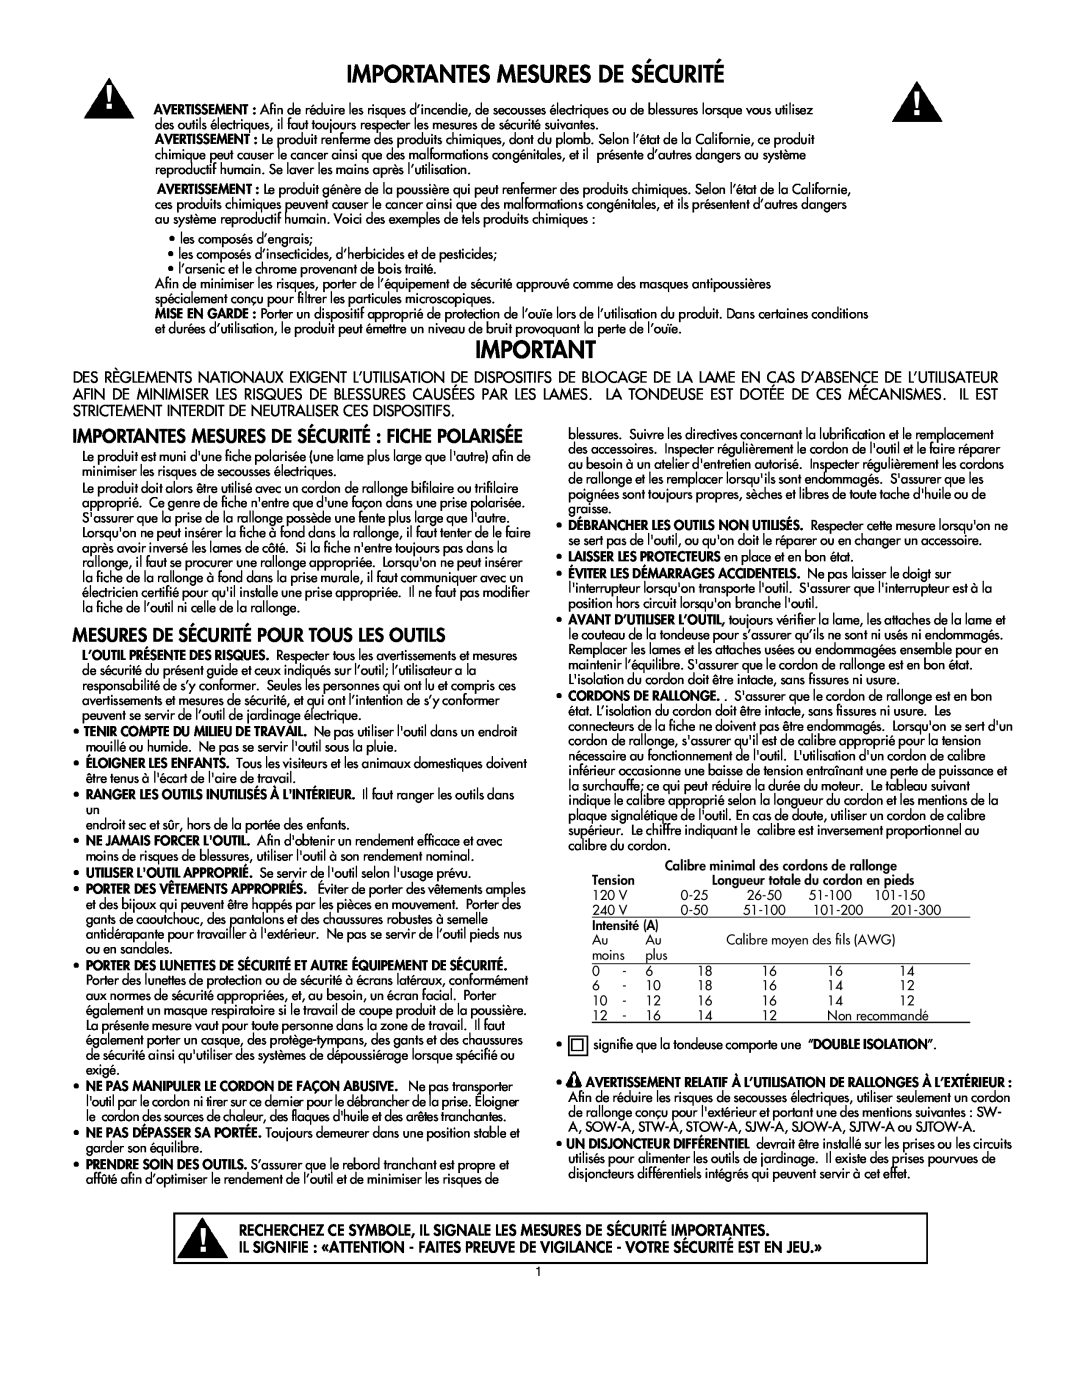 DeWalt C935-355190 owner manual Mesures De Sécurité Pour Tous Les Outils, Importantes Mesures De Sécurité Fiche Polarisée 